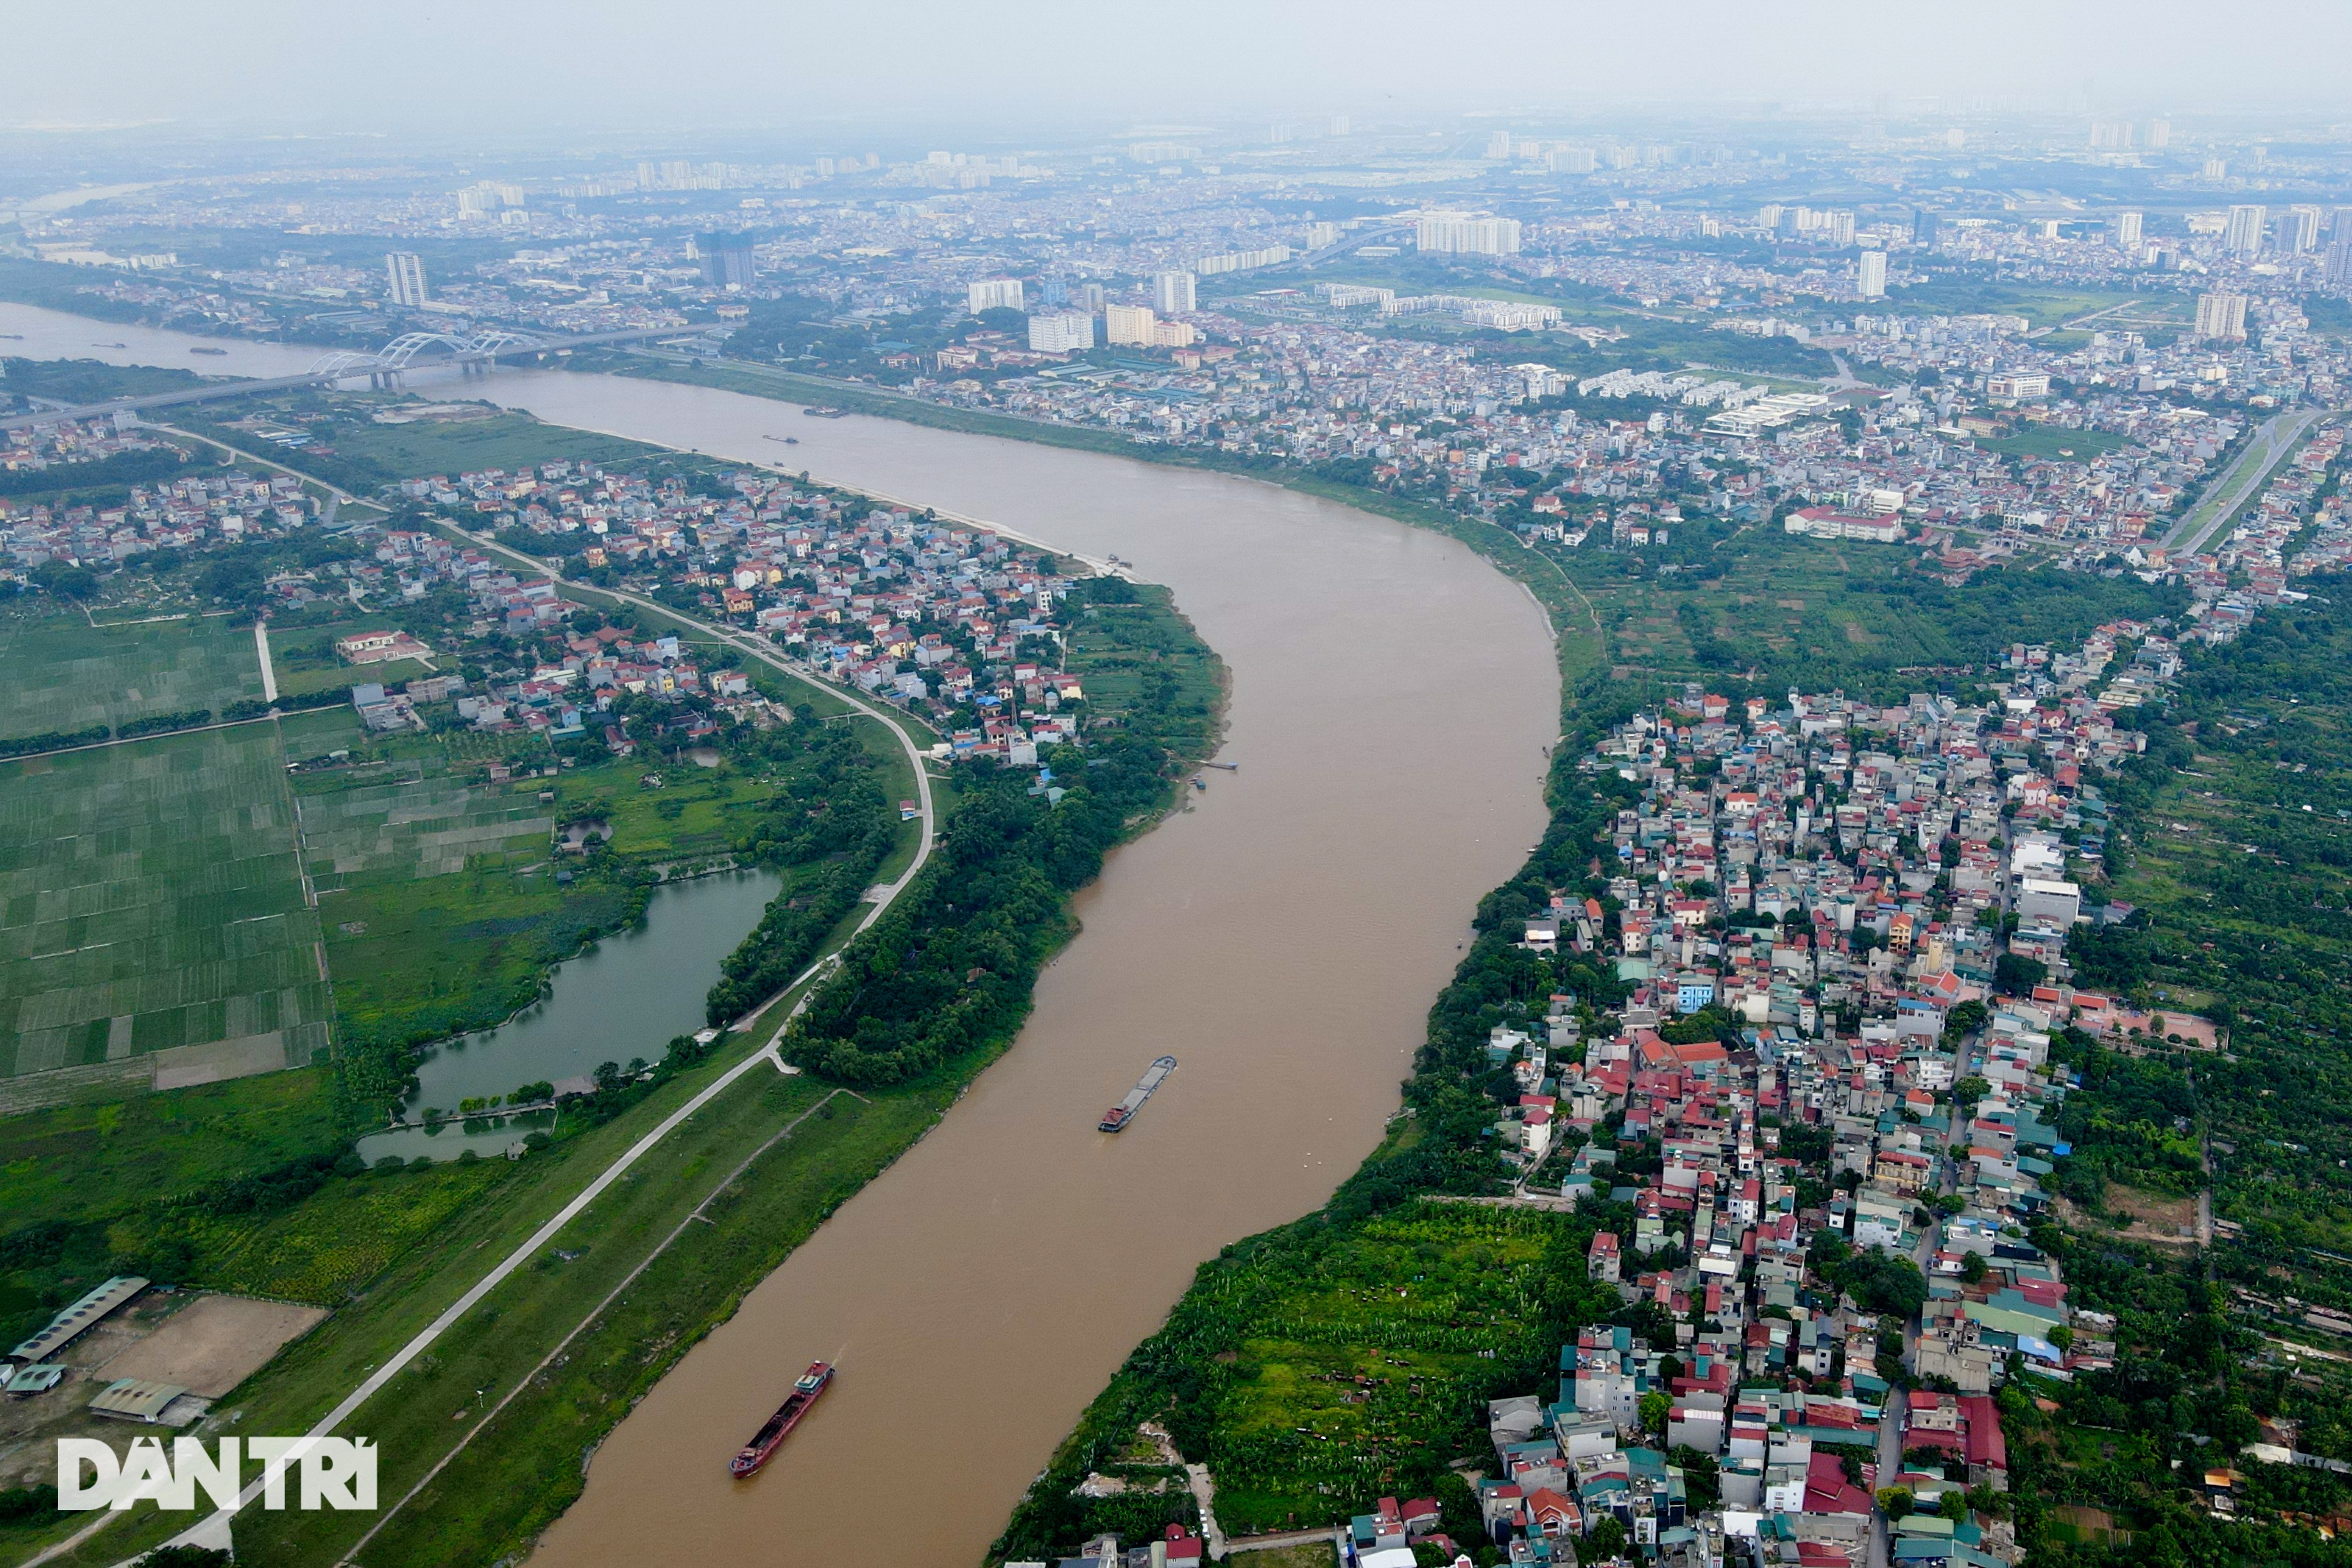 Toàn cảnh 2 khu dân cư ven sông Hồng dự kiến phải di dời theo quy hoạch - 12